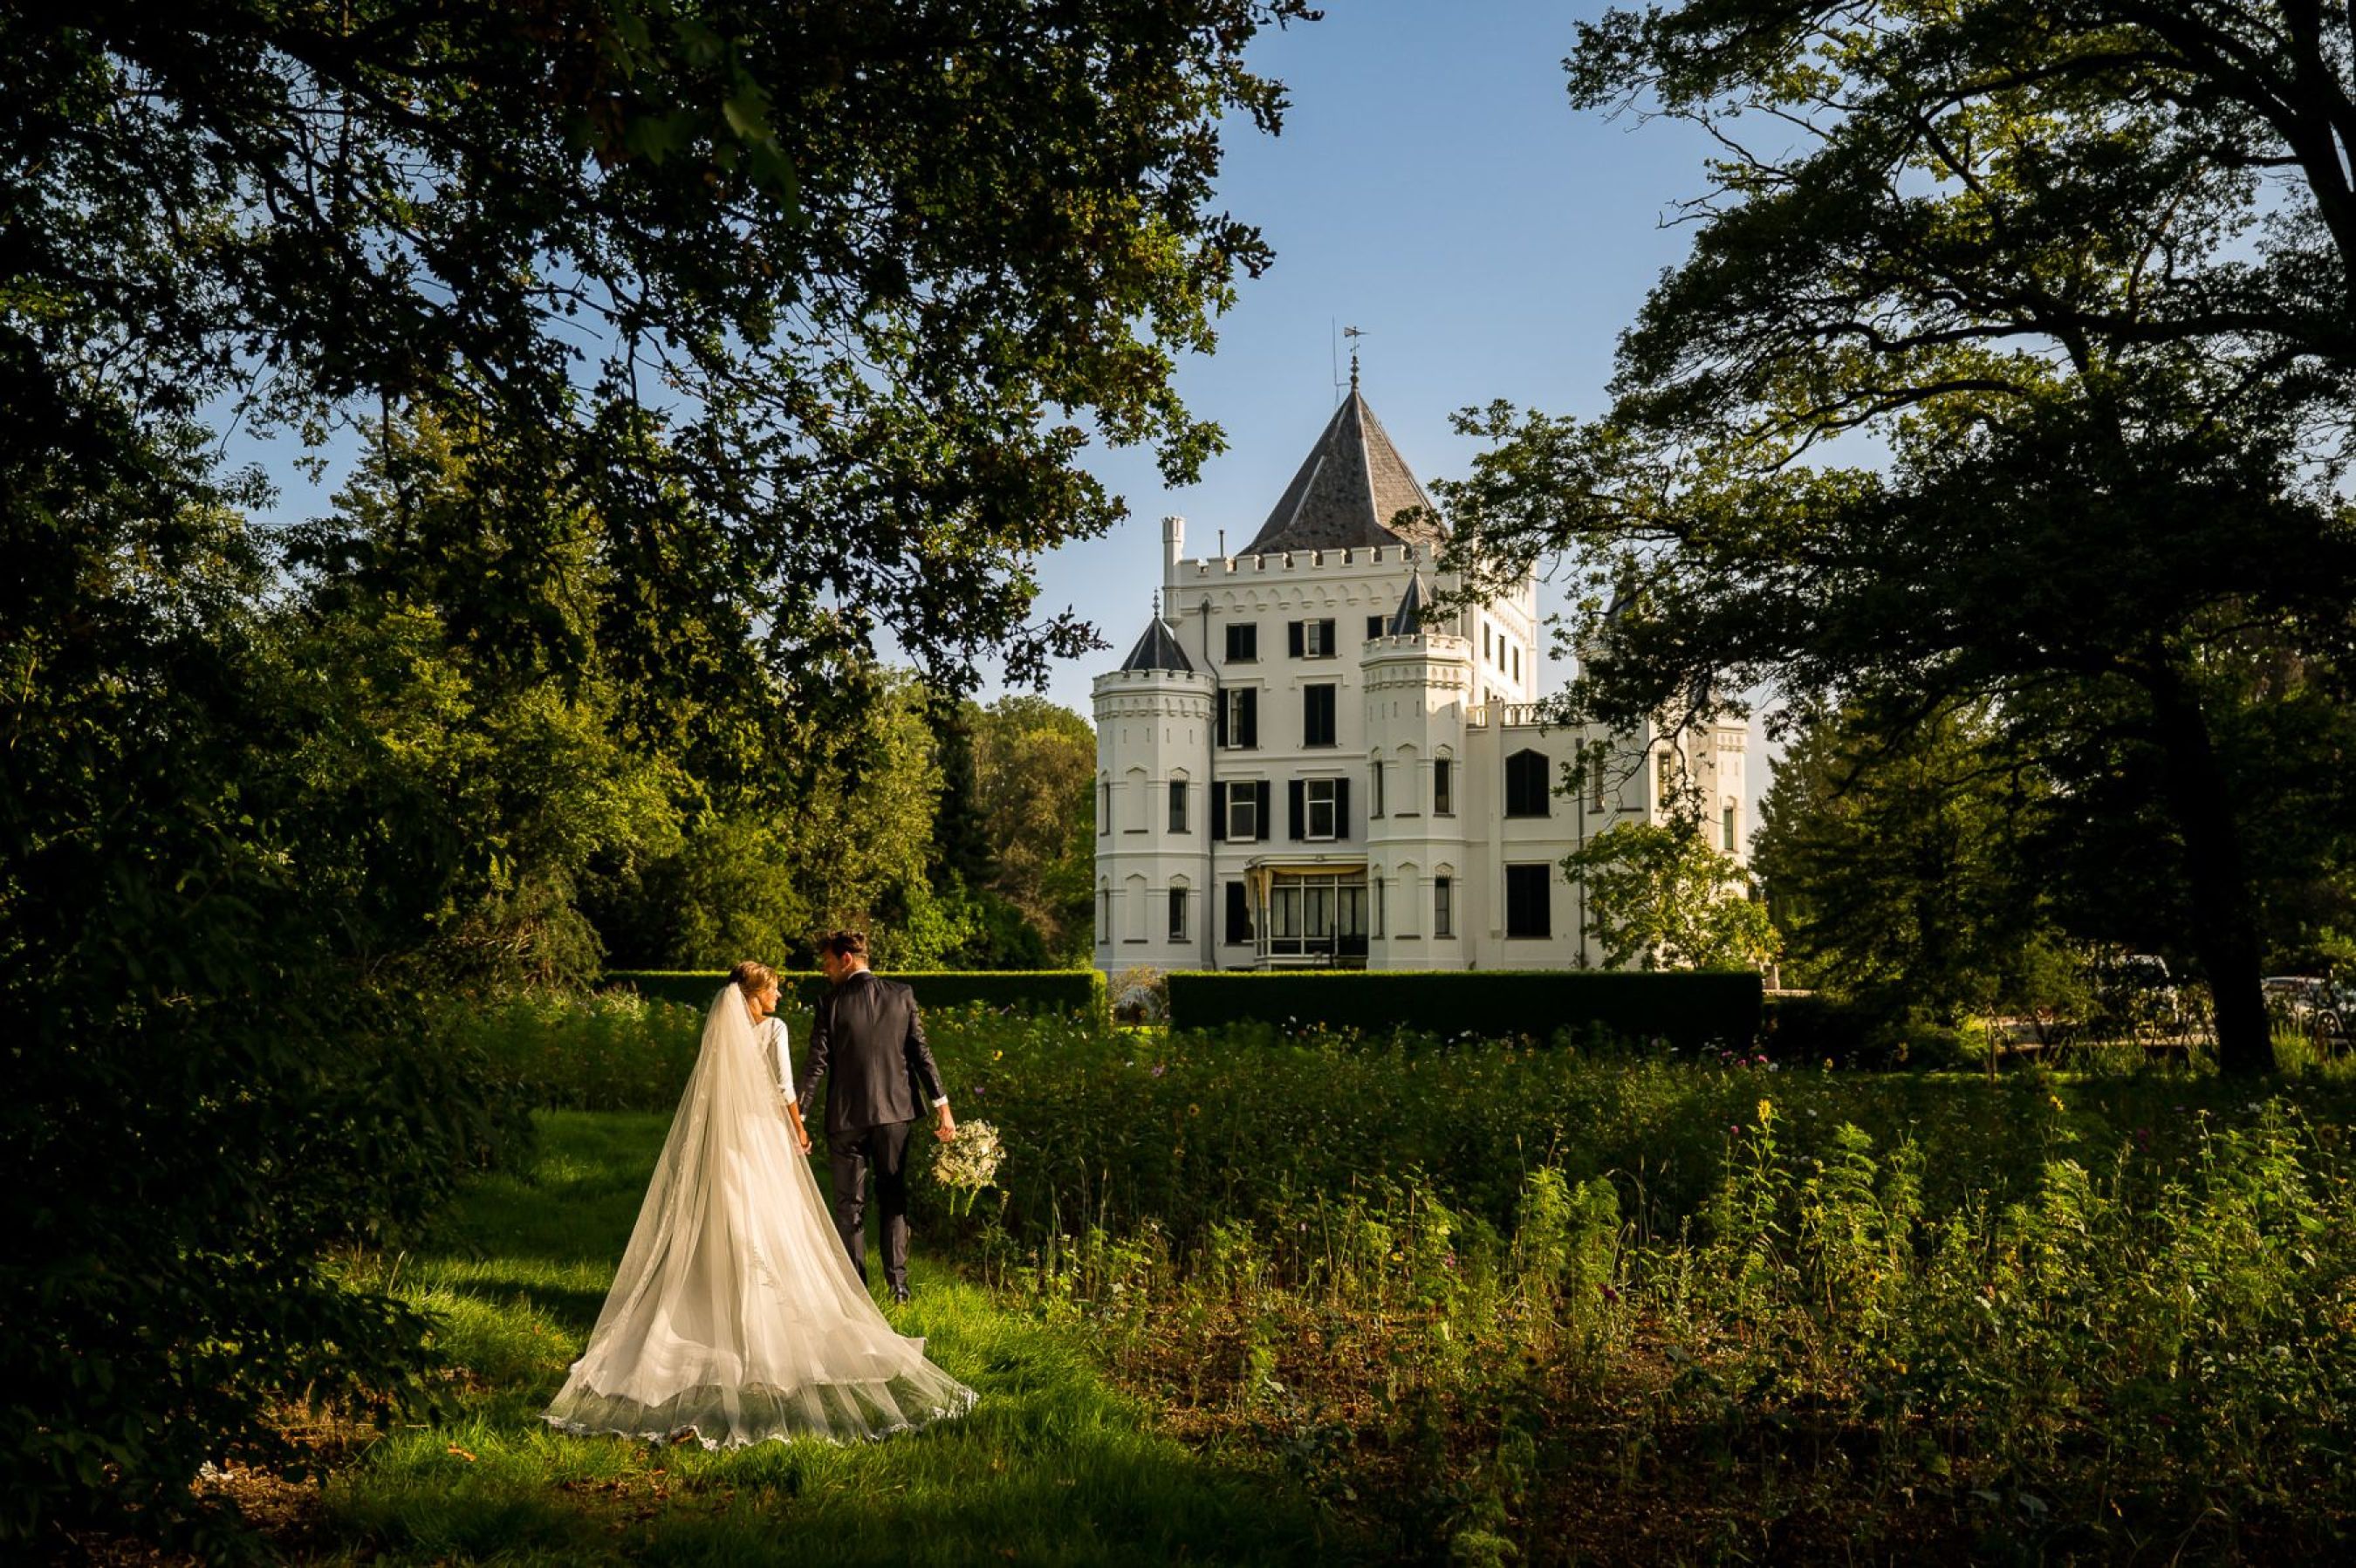 Harmen-Jenienke-Jan-van-de-Maat-Bruidsfotografie-trouwfotografie-trouwen-kasteel-Sandenburg